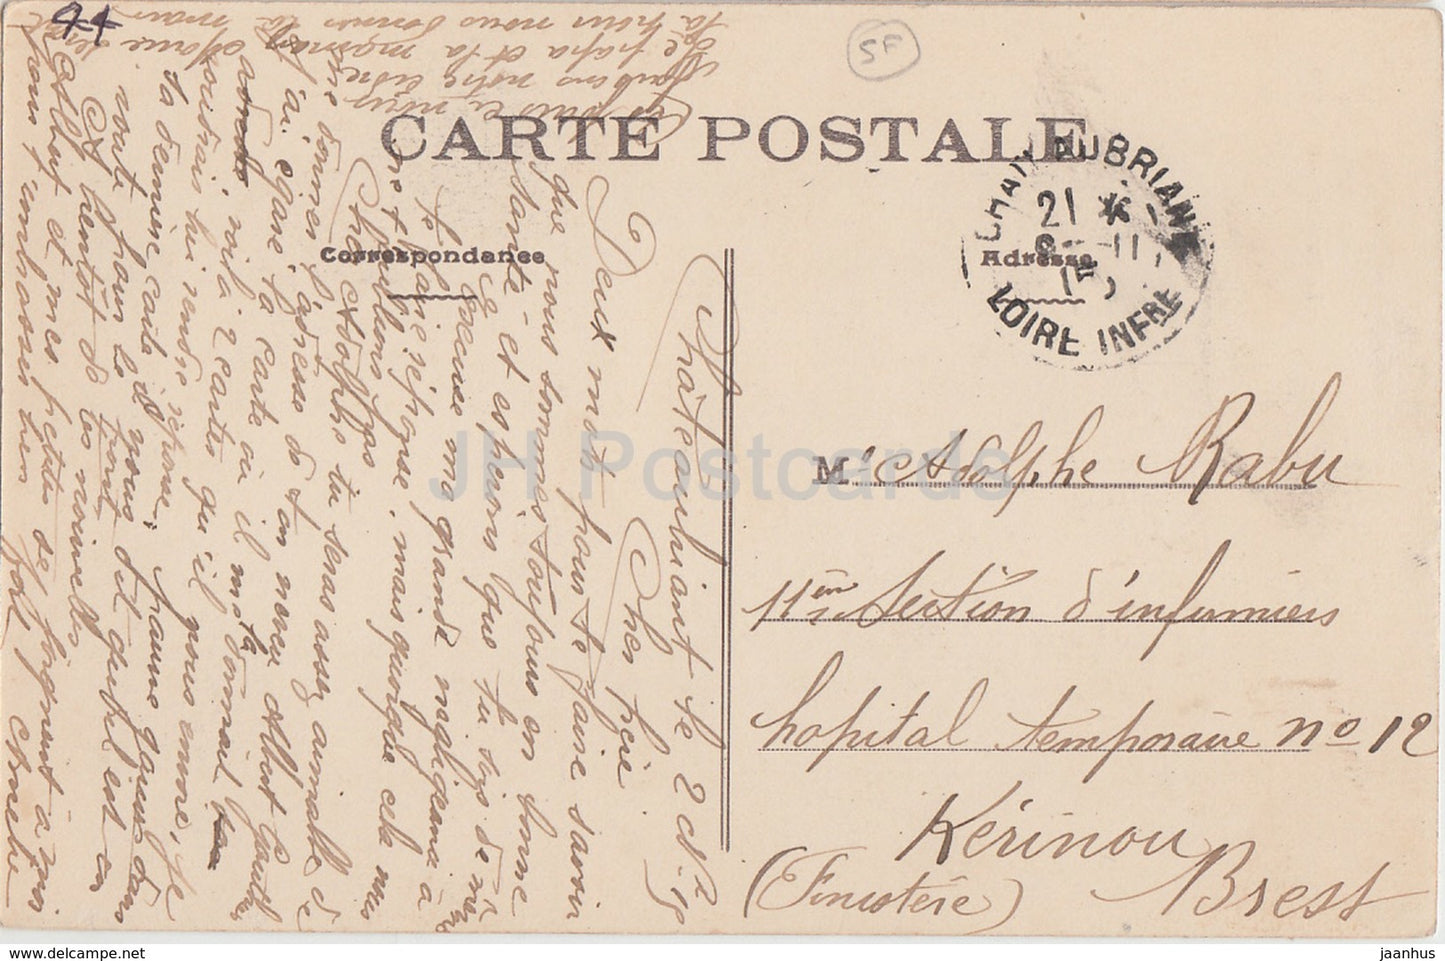 Chateaubriant - Le Chateau - Le Pavillon des Champs - castle - 615 - old postcard - France - used